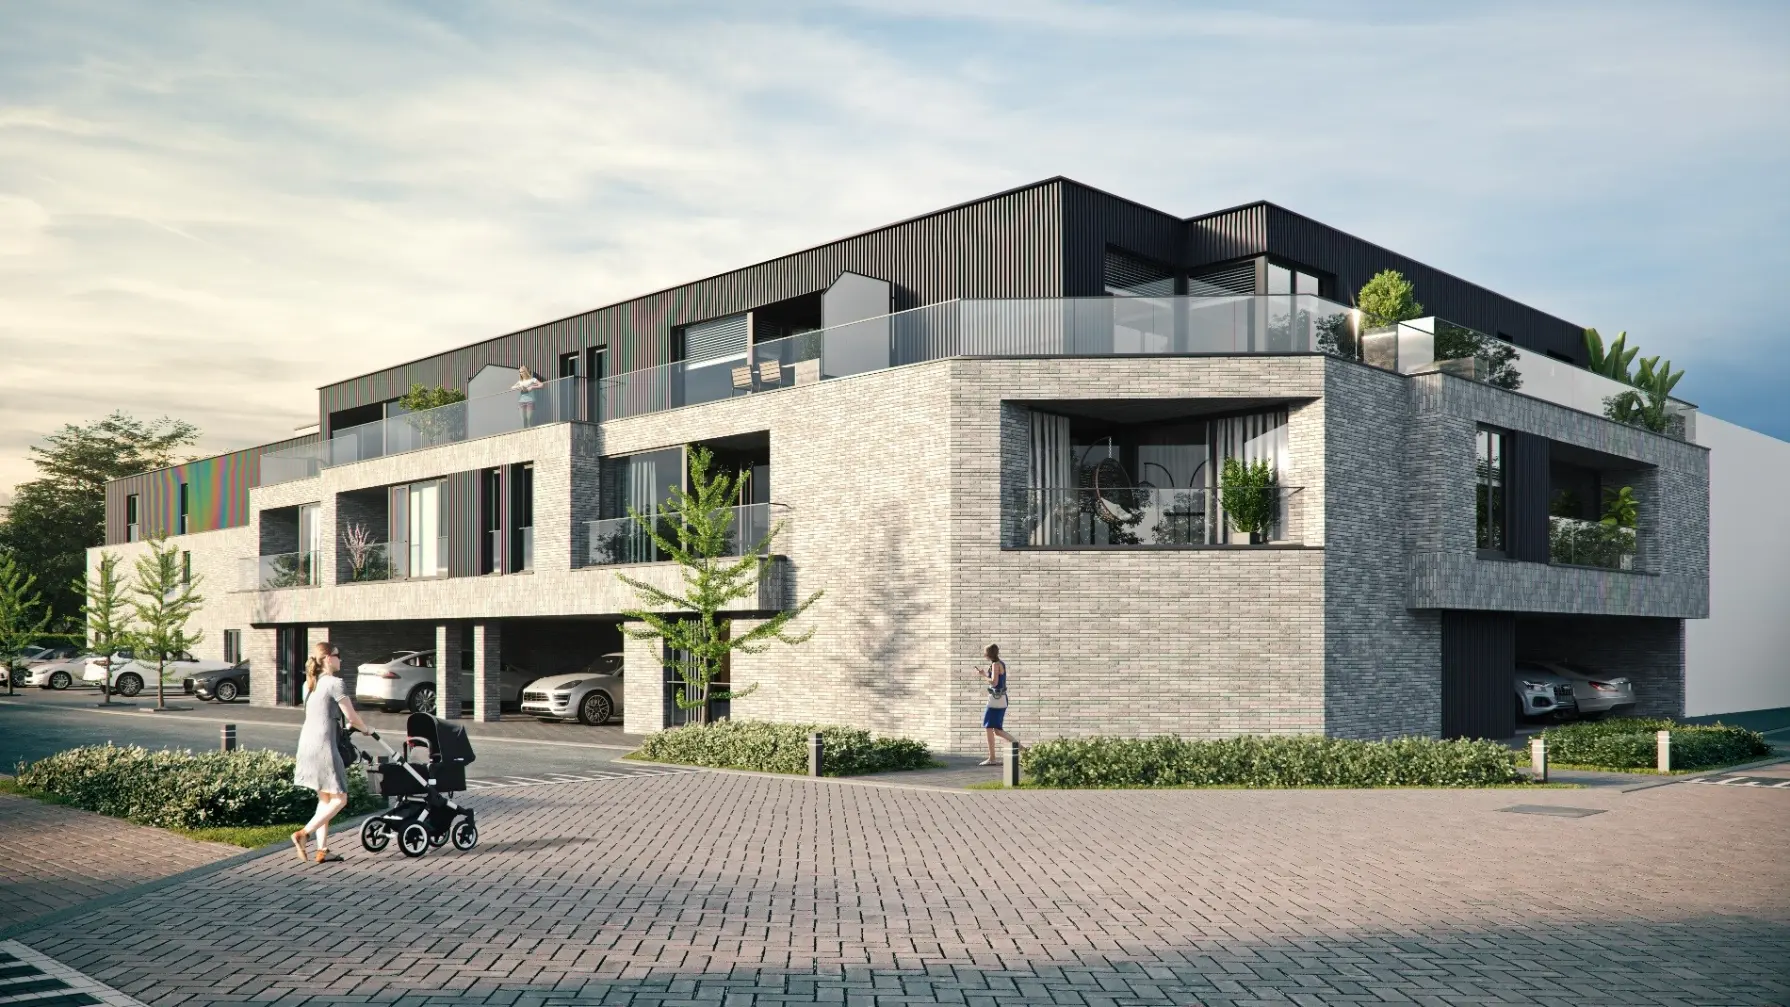 Project - Residentie Sint-Elooi